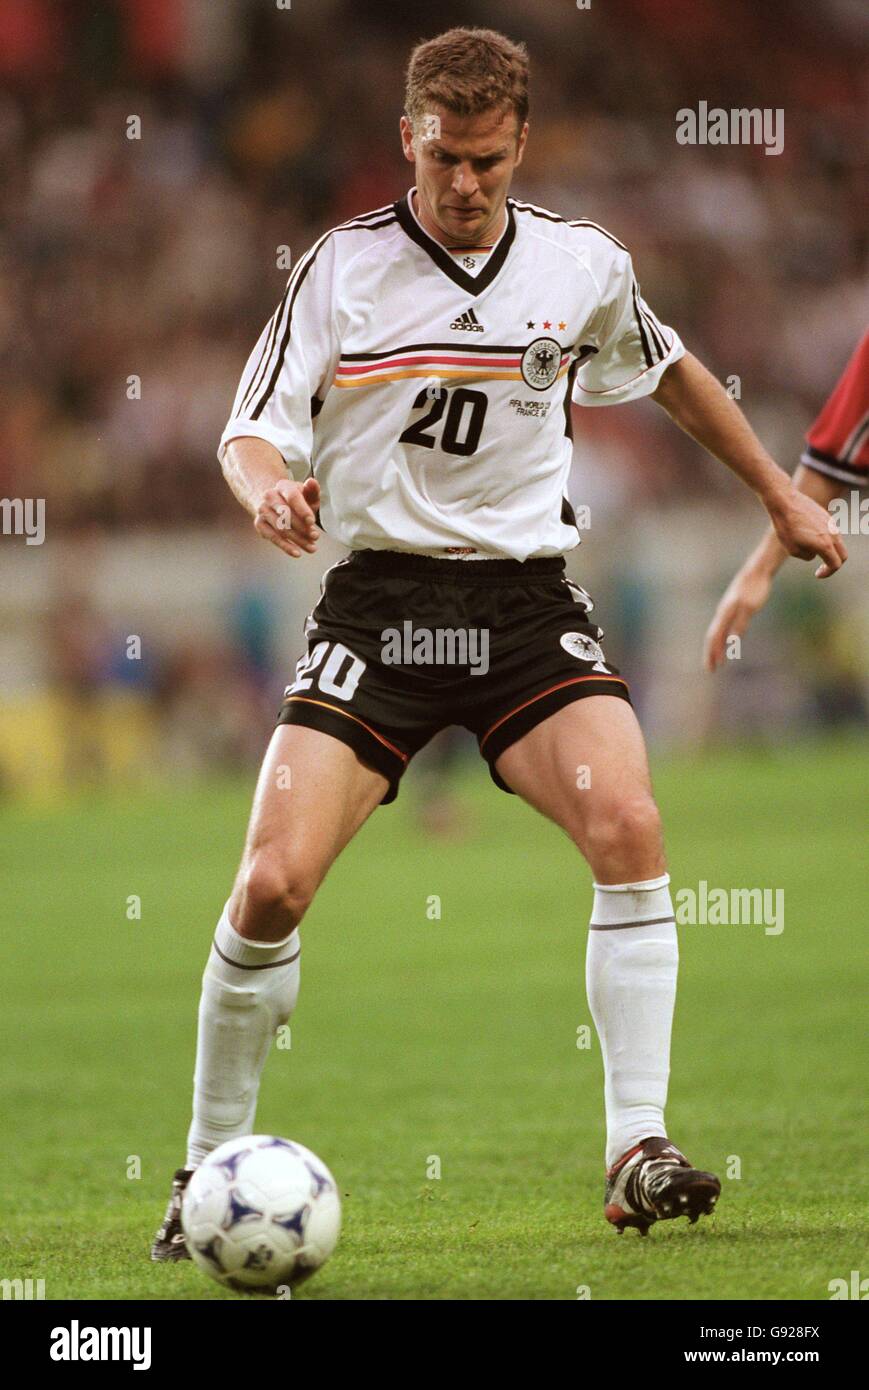 Calcio - Coppa del mondo Francia 98 - Gruppo F - Germania / USA. Oliver Bierhoff, Germania Foto Stock